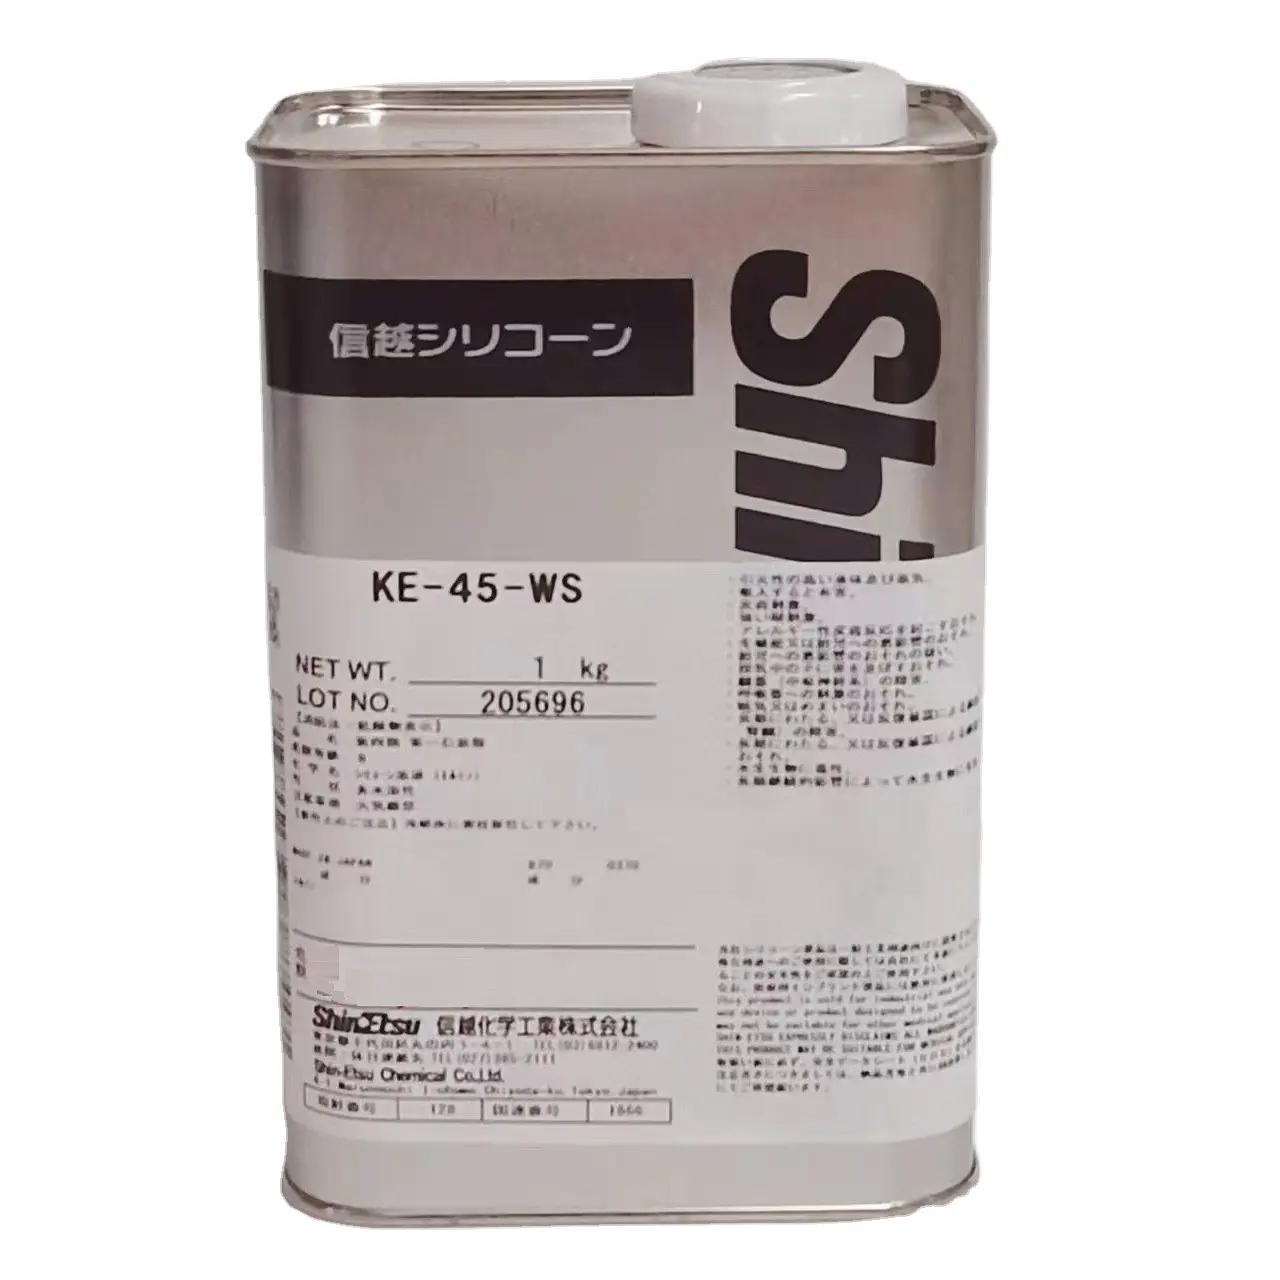 KE-45-WS Shin Etsu silikon niedrigen viskosität one-komponente zimmer-temperatur heilung silikon gummi für elektrische konforme beschichtung